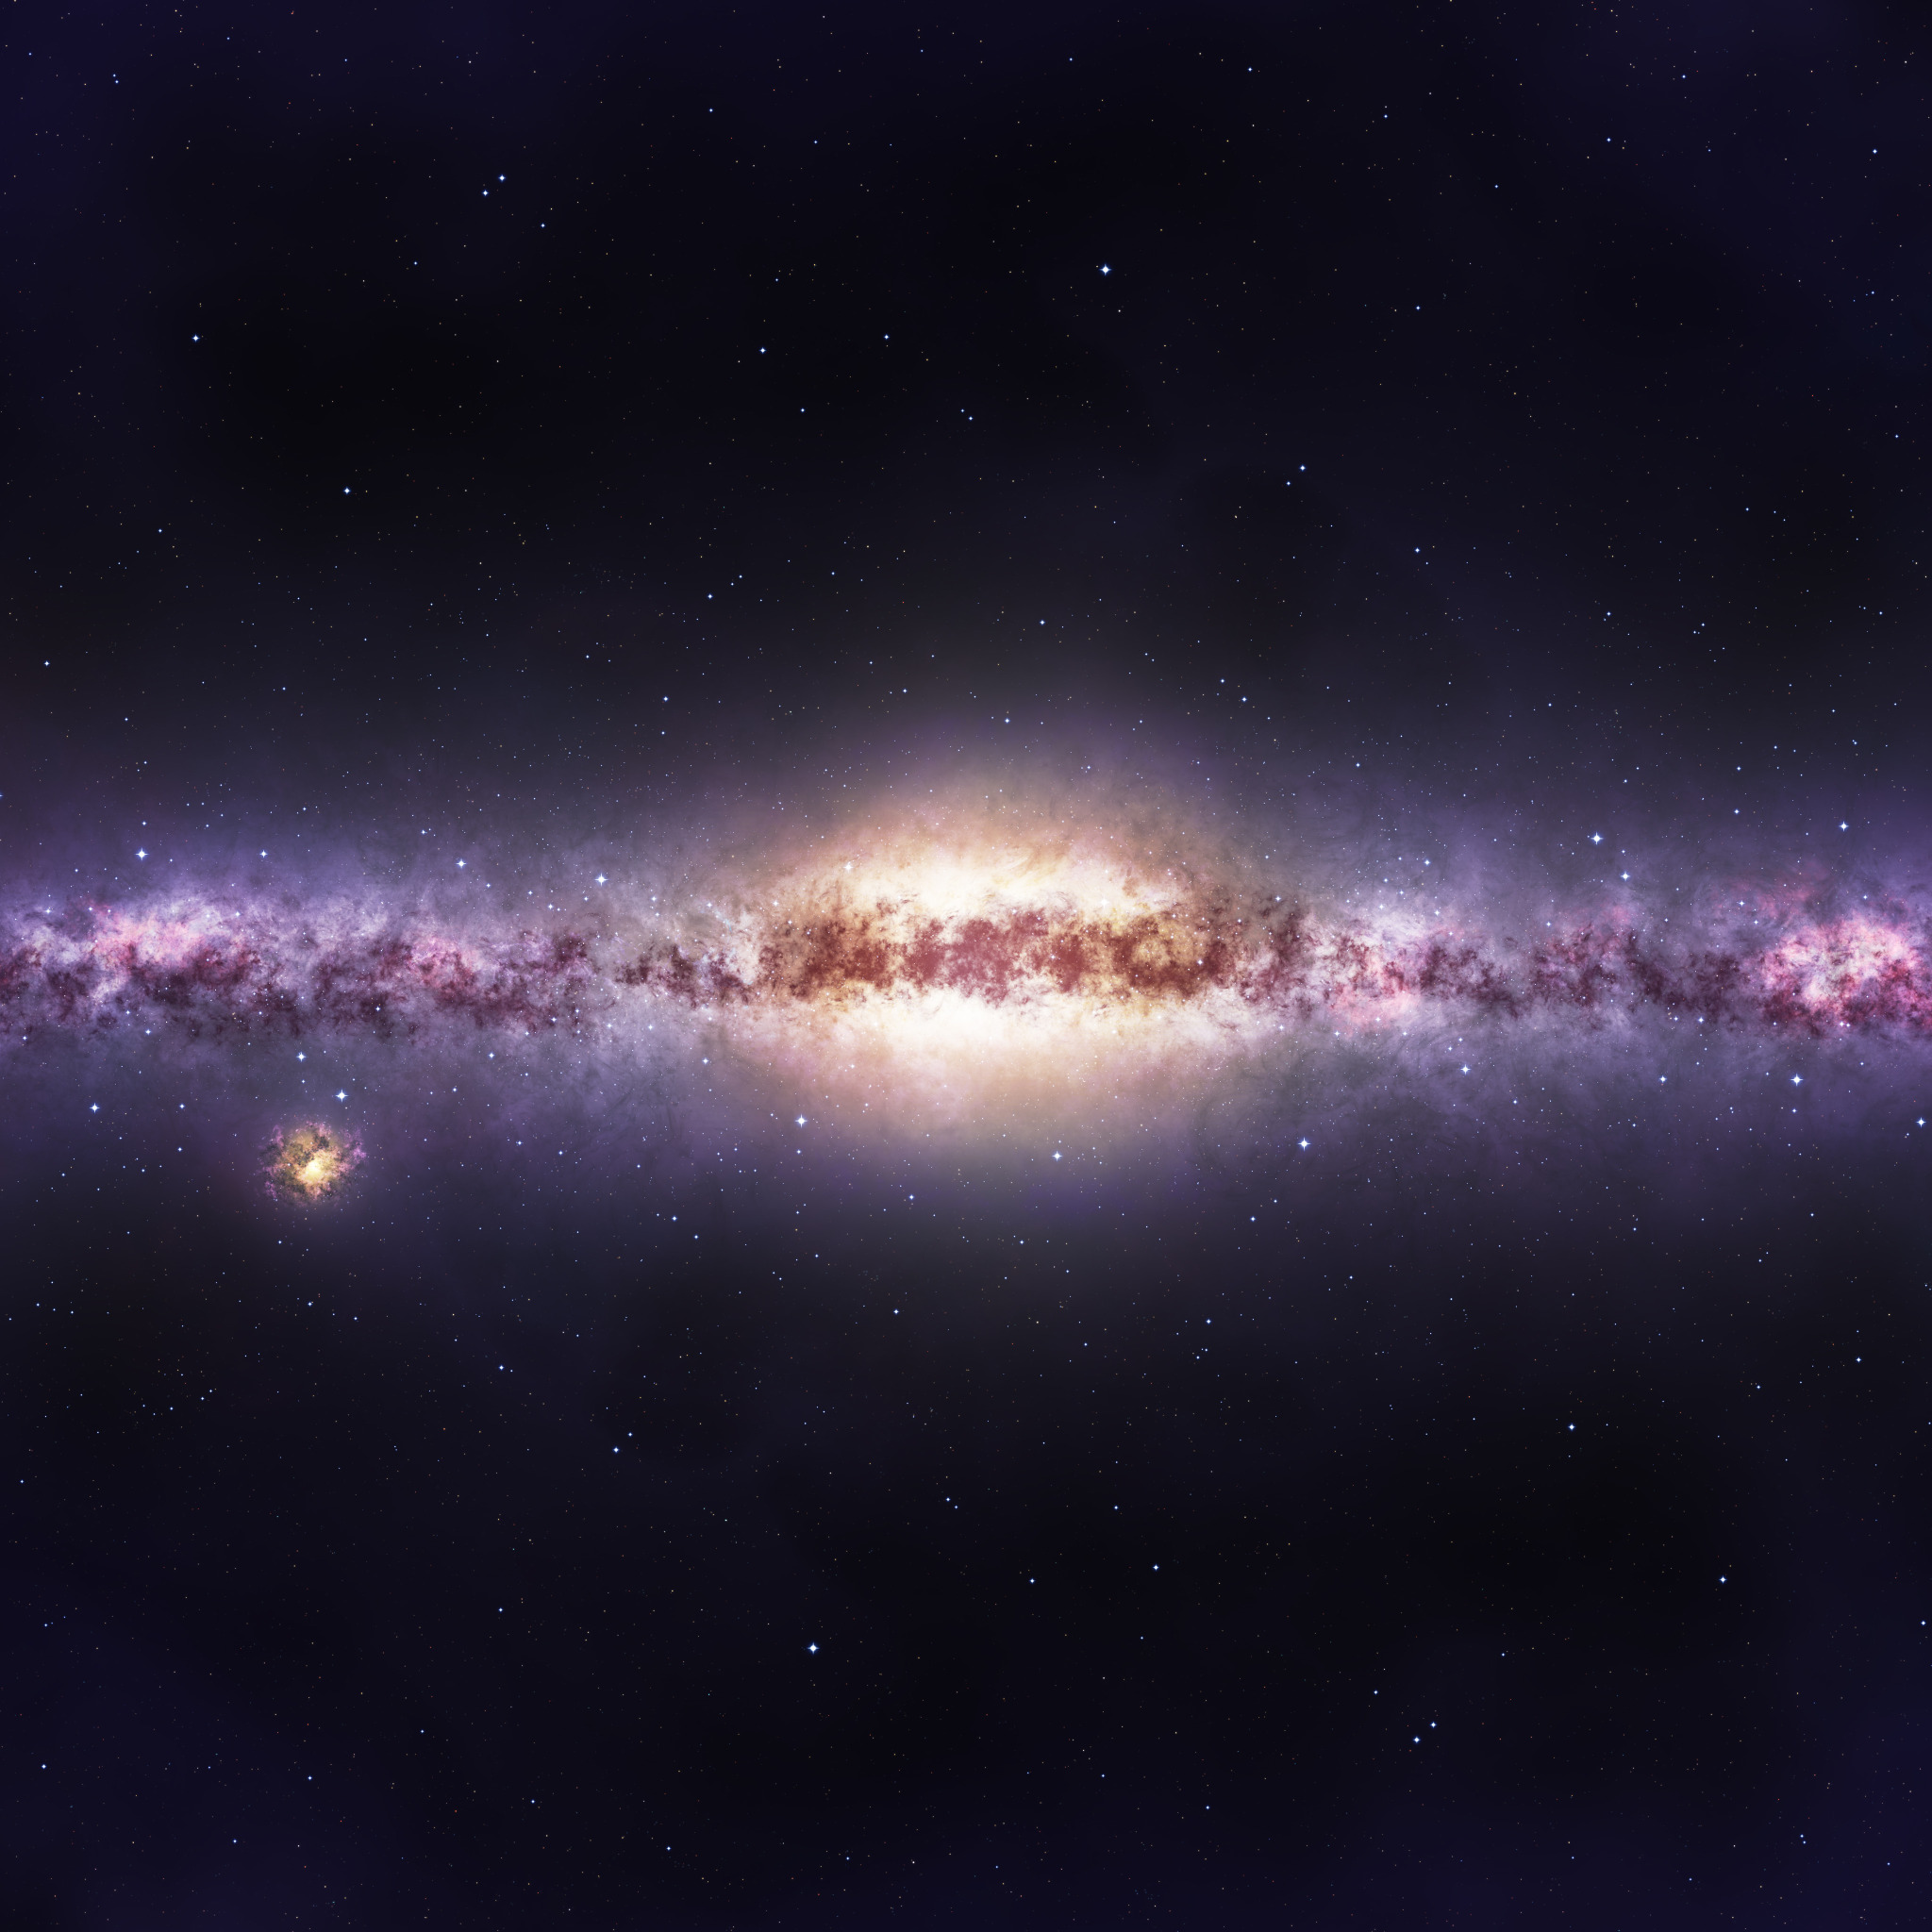 Фотография размером 1024 2048. Наша Галактика Млечный путь. Милки Вэй Галактика. Млечный путь космос. Баннер космос.